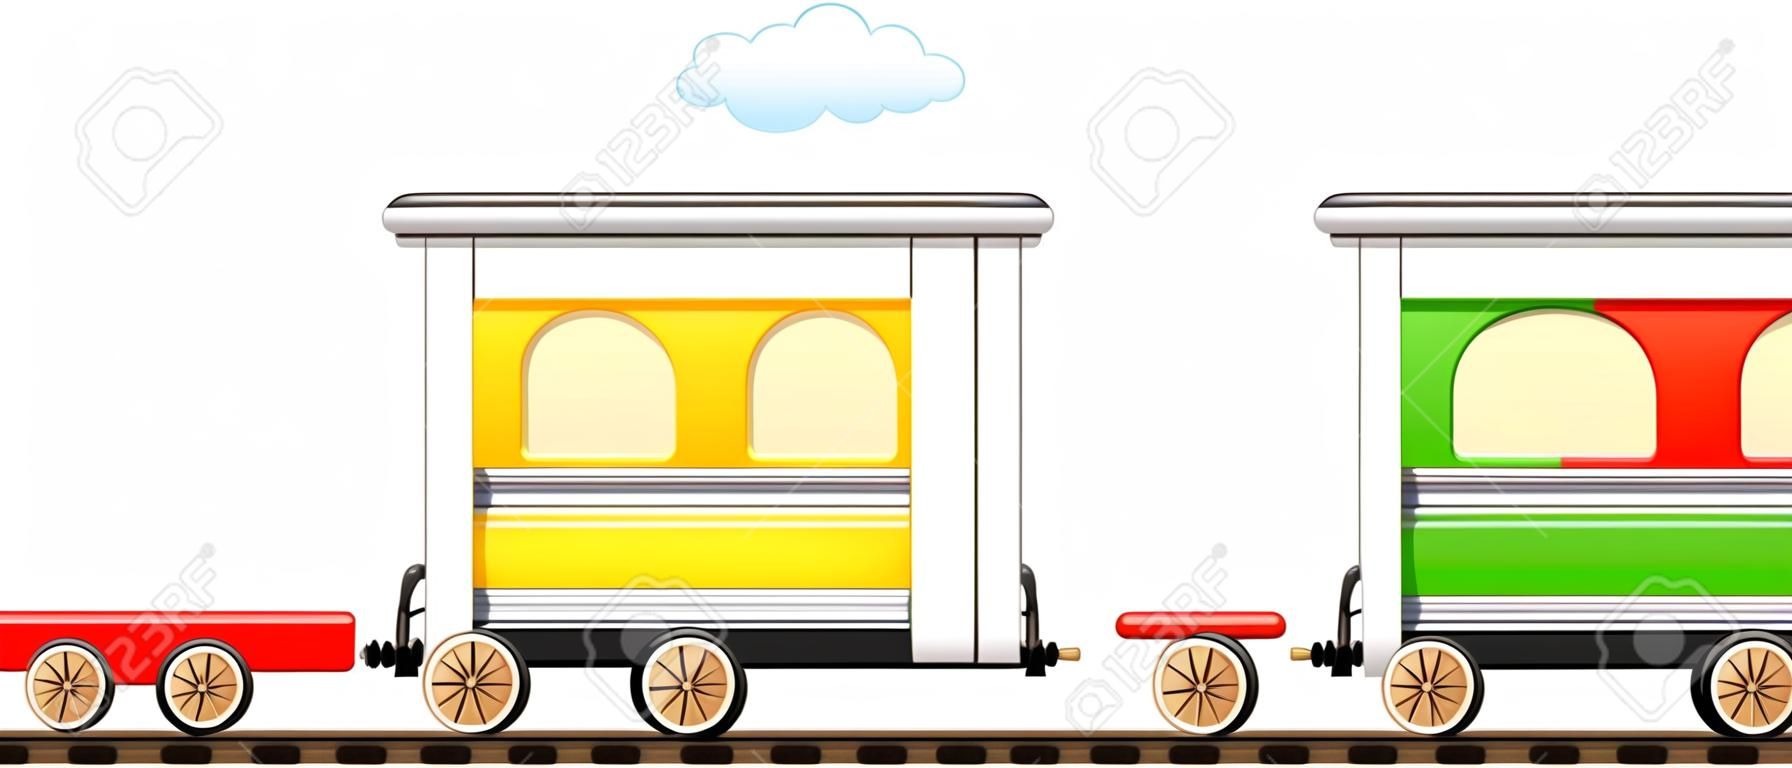 Train de bande dessinée isolé mignon avec chariot coloré en chemin de fer